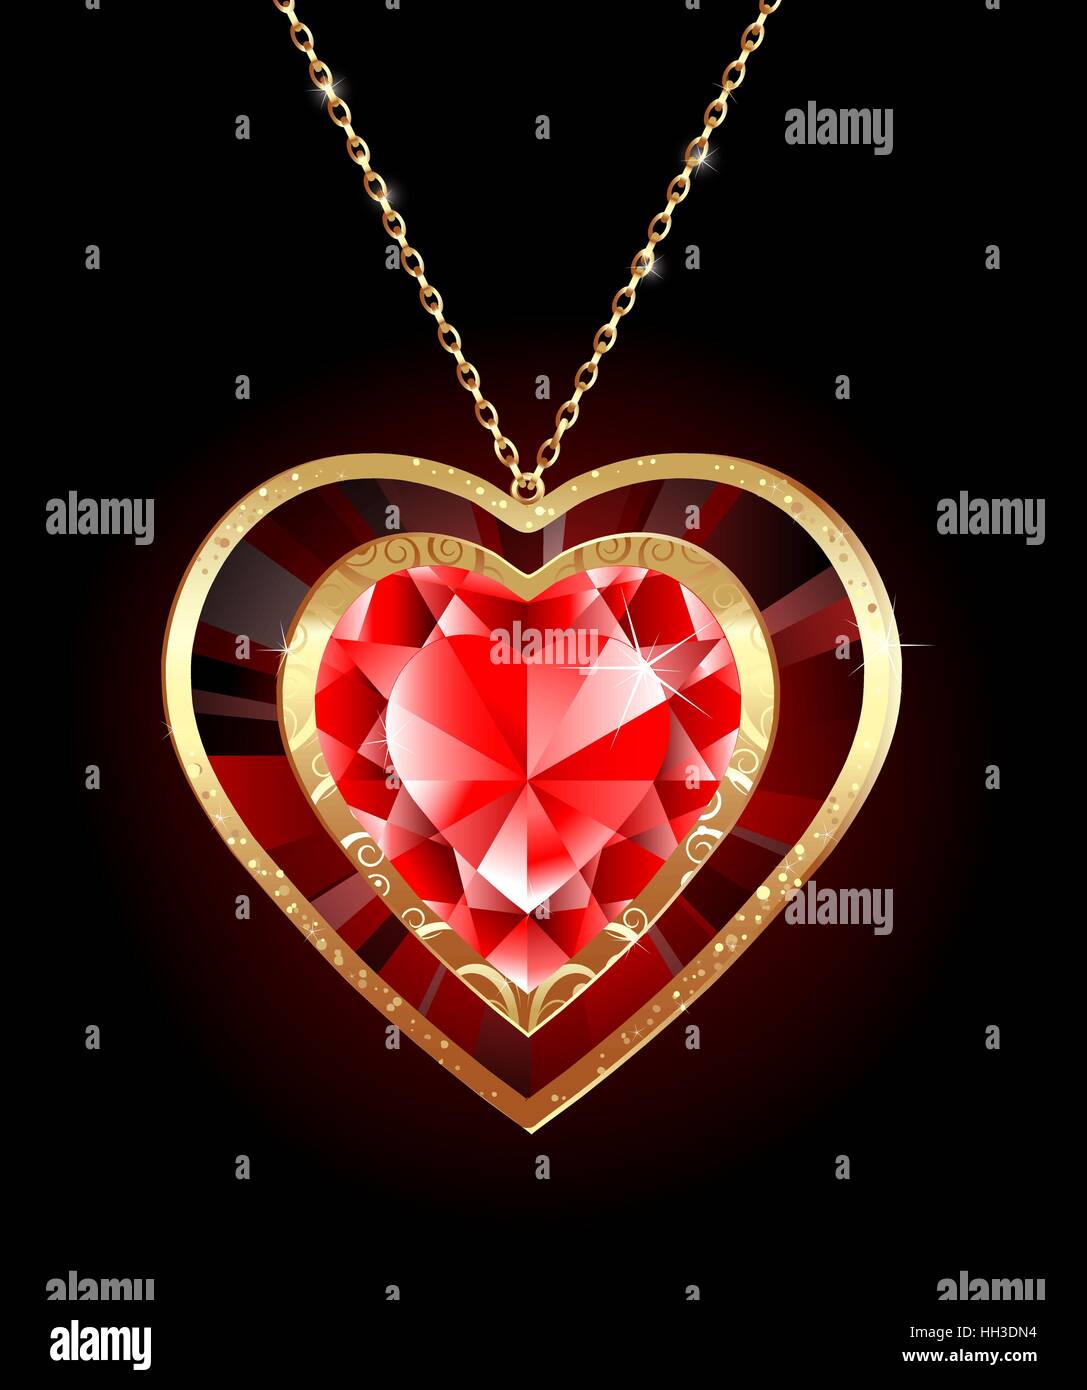 Bijoux de luxe pendentif en forme d'un cœur de rubis rouge sur une chaîne en or Illustration de Vecteur